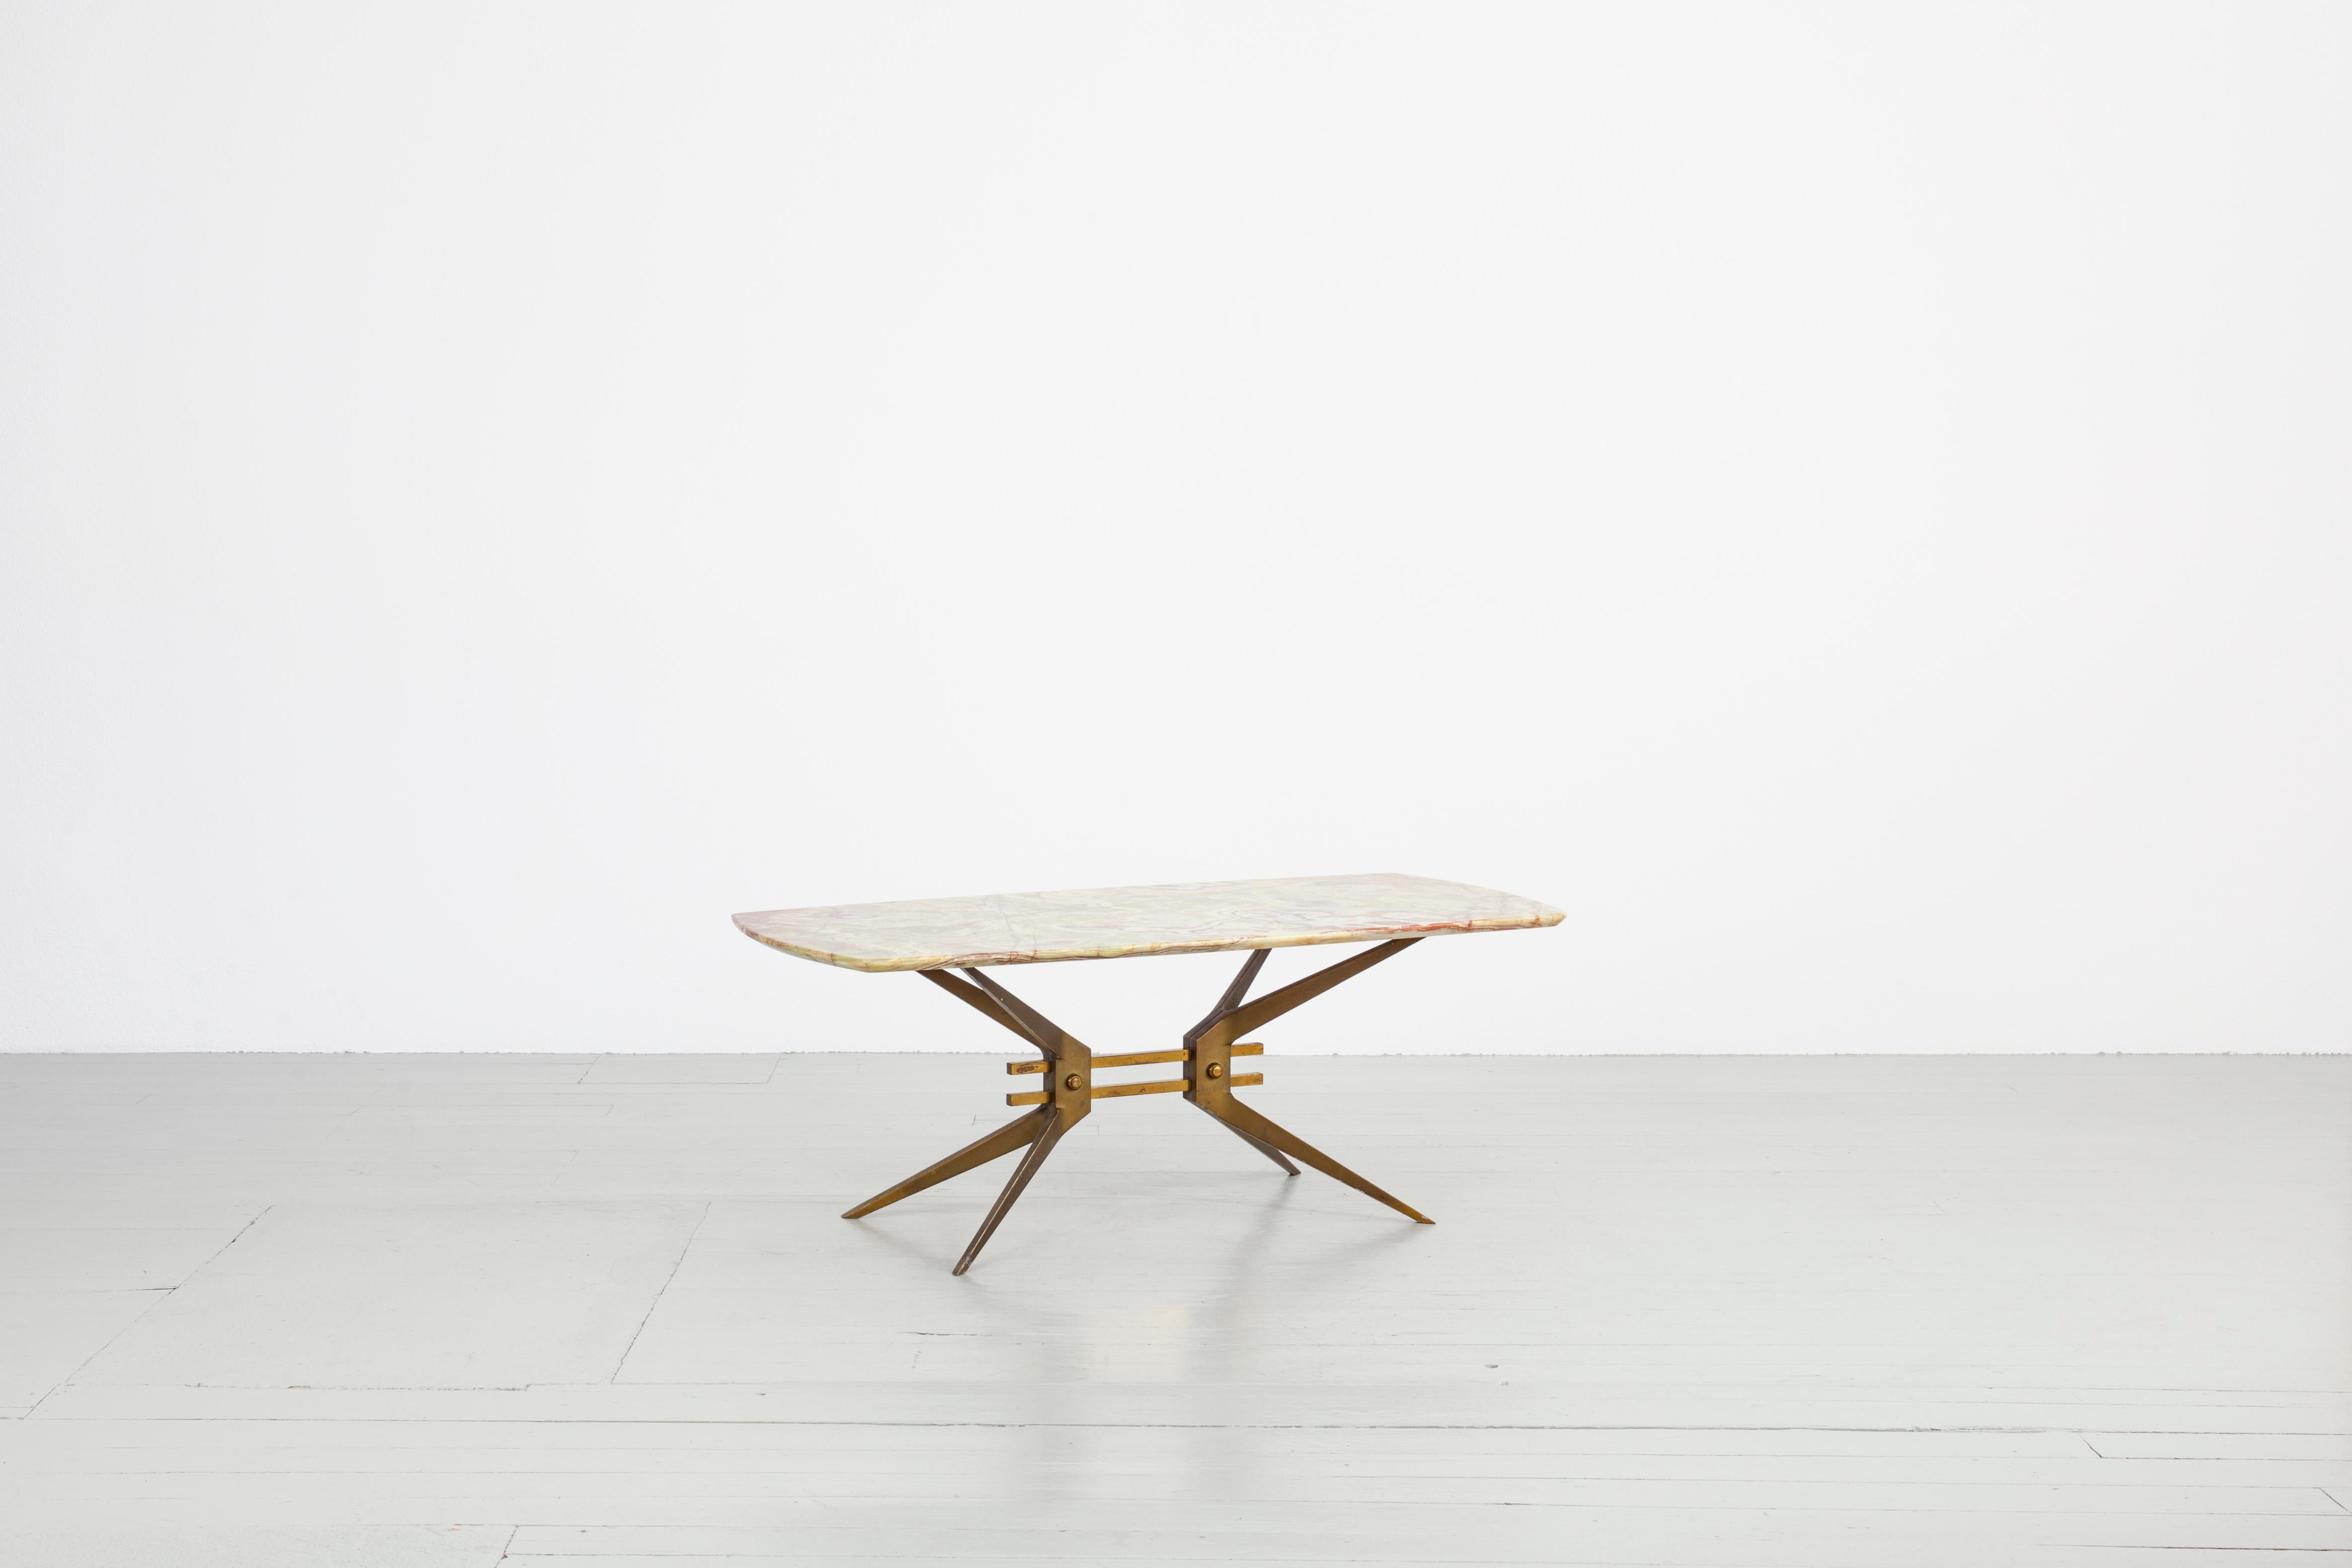 Cette table basse robuste a été fabriquée en Italie dans les années 1960. Le cadre de la table est une base stable pour le lourd plateau en Onyx. Deux entretoises en laiton relient les pieds effilés de la table pour former un cadre en X. La